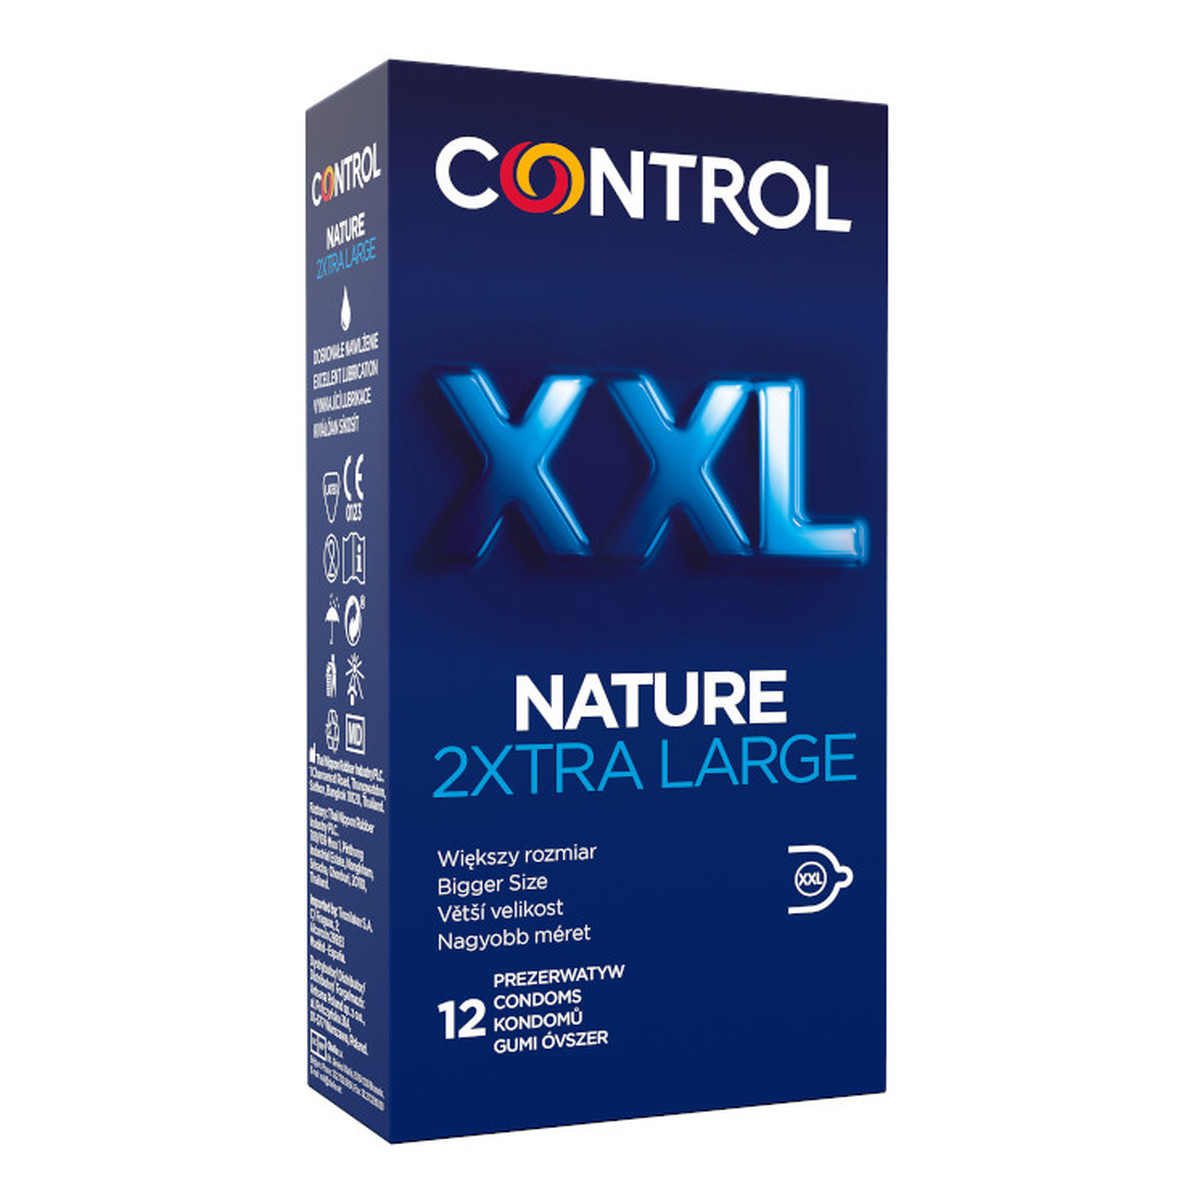 Control Nature 2xtra large prezerwatywy powiększone z naturalnego lateksu 12szt.